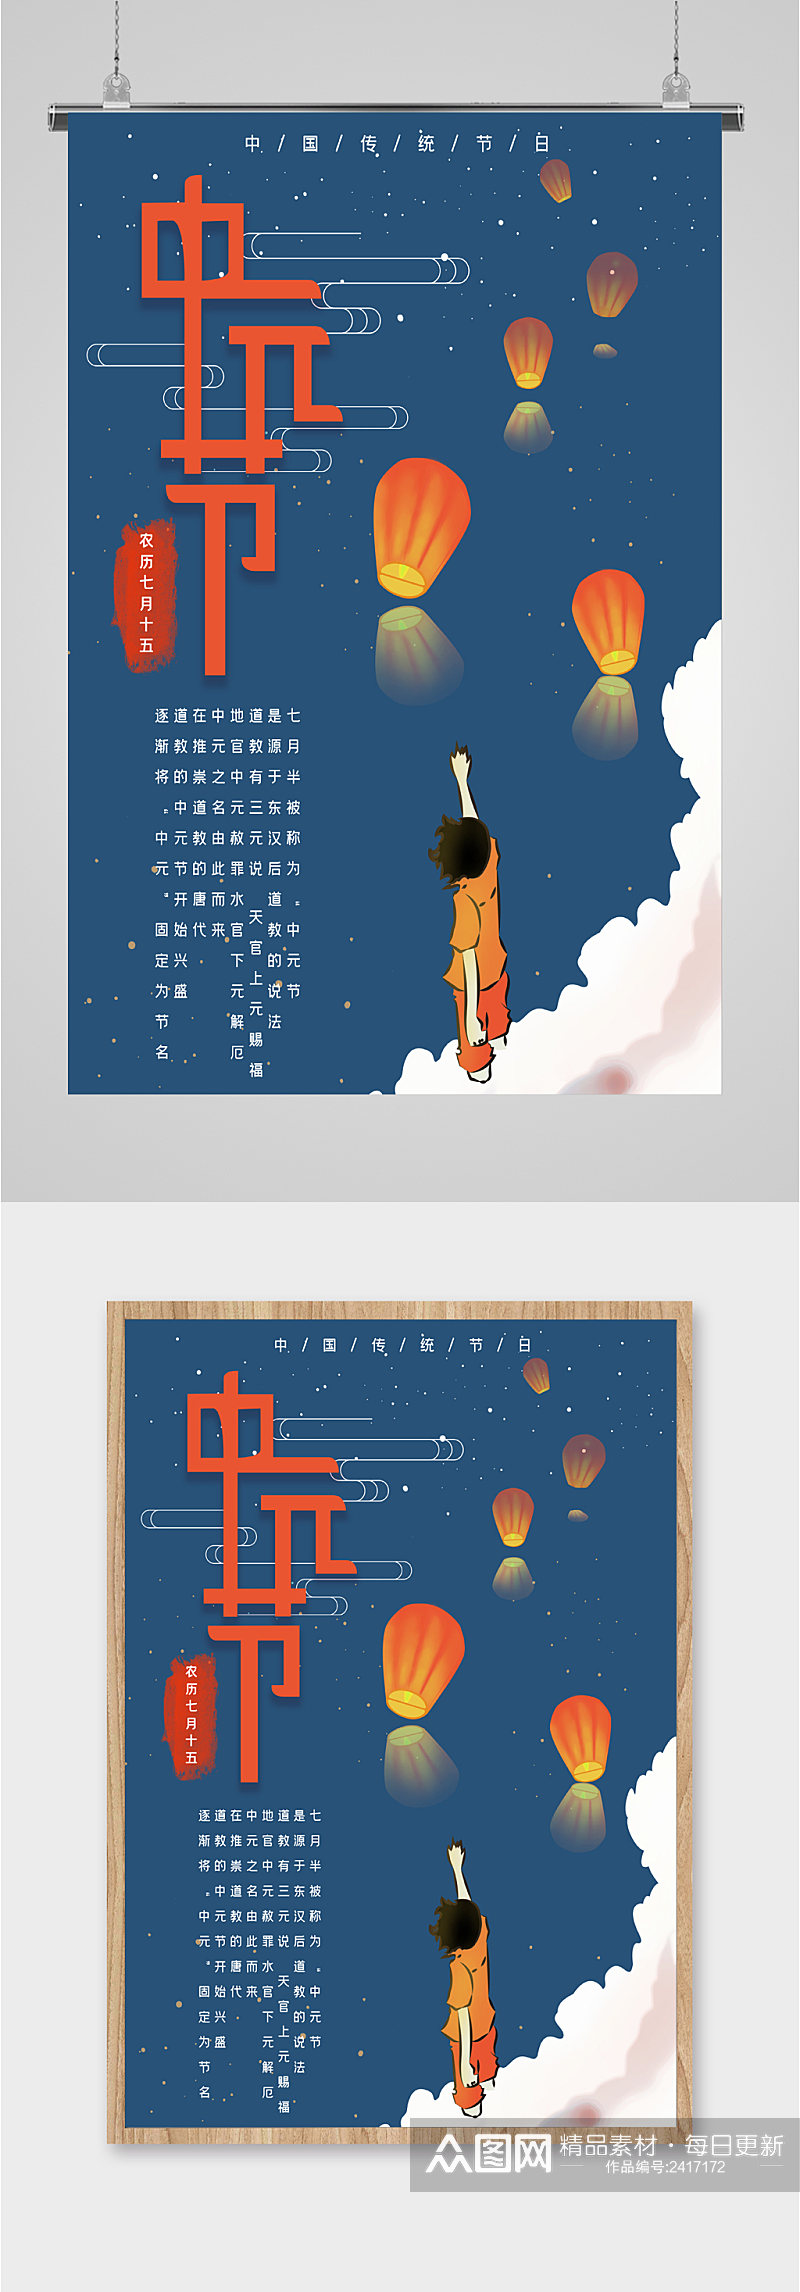 中国传统节日中元节海报素材